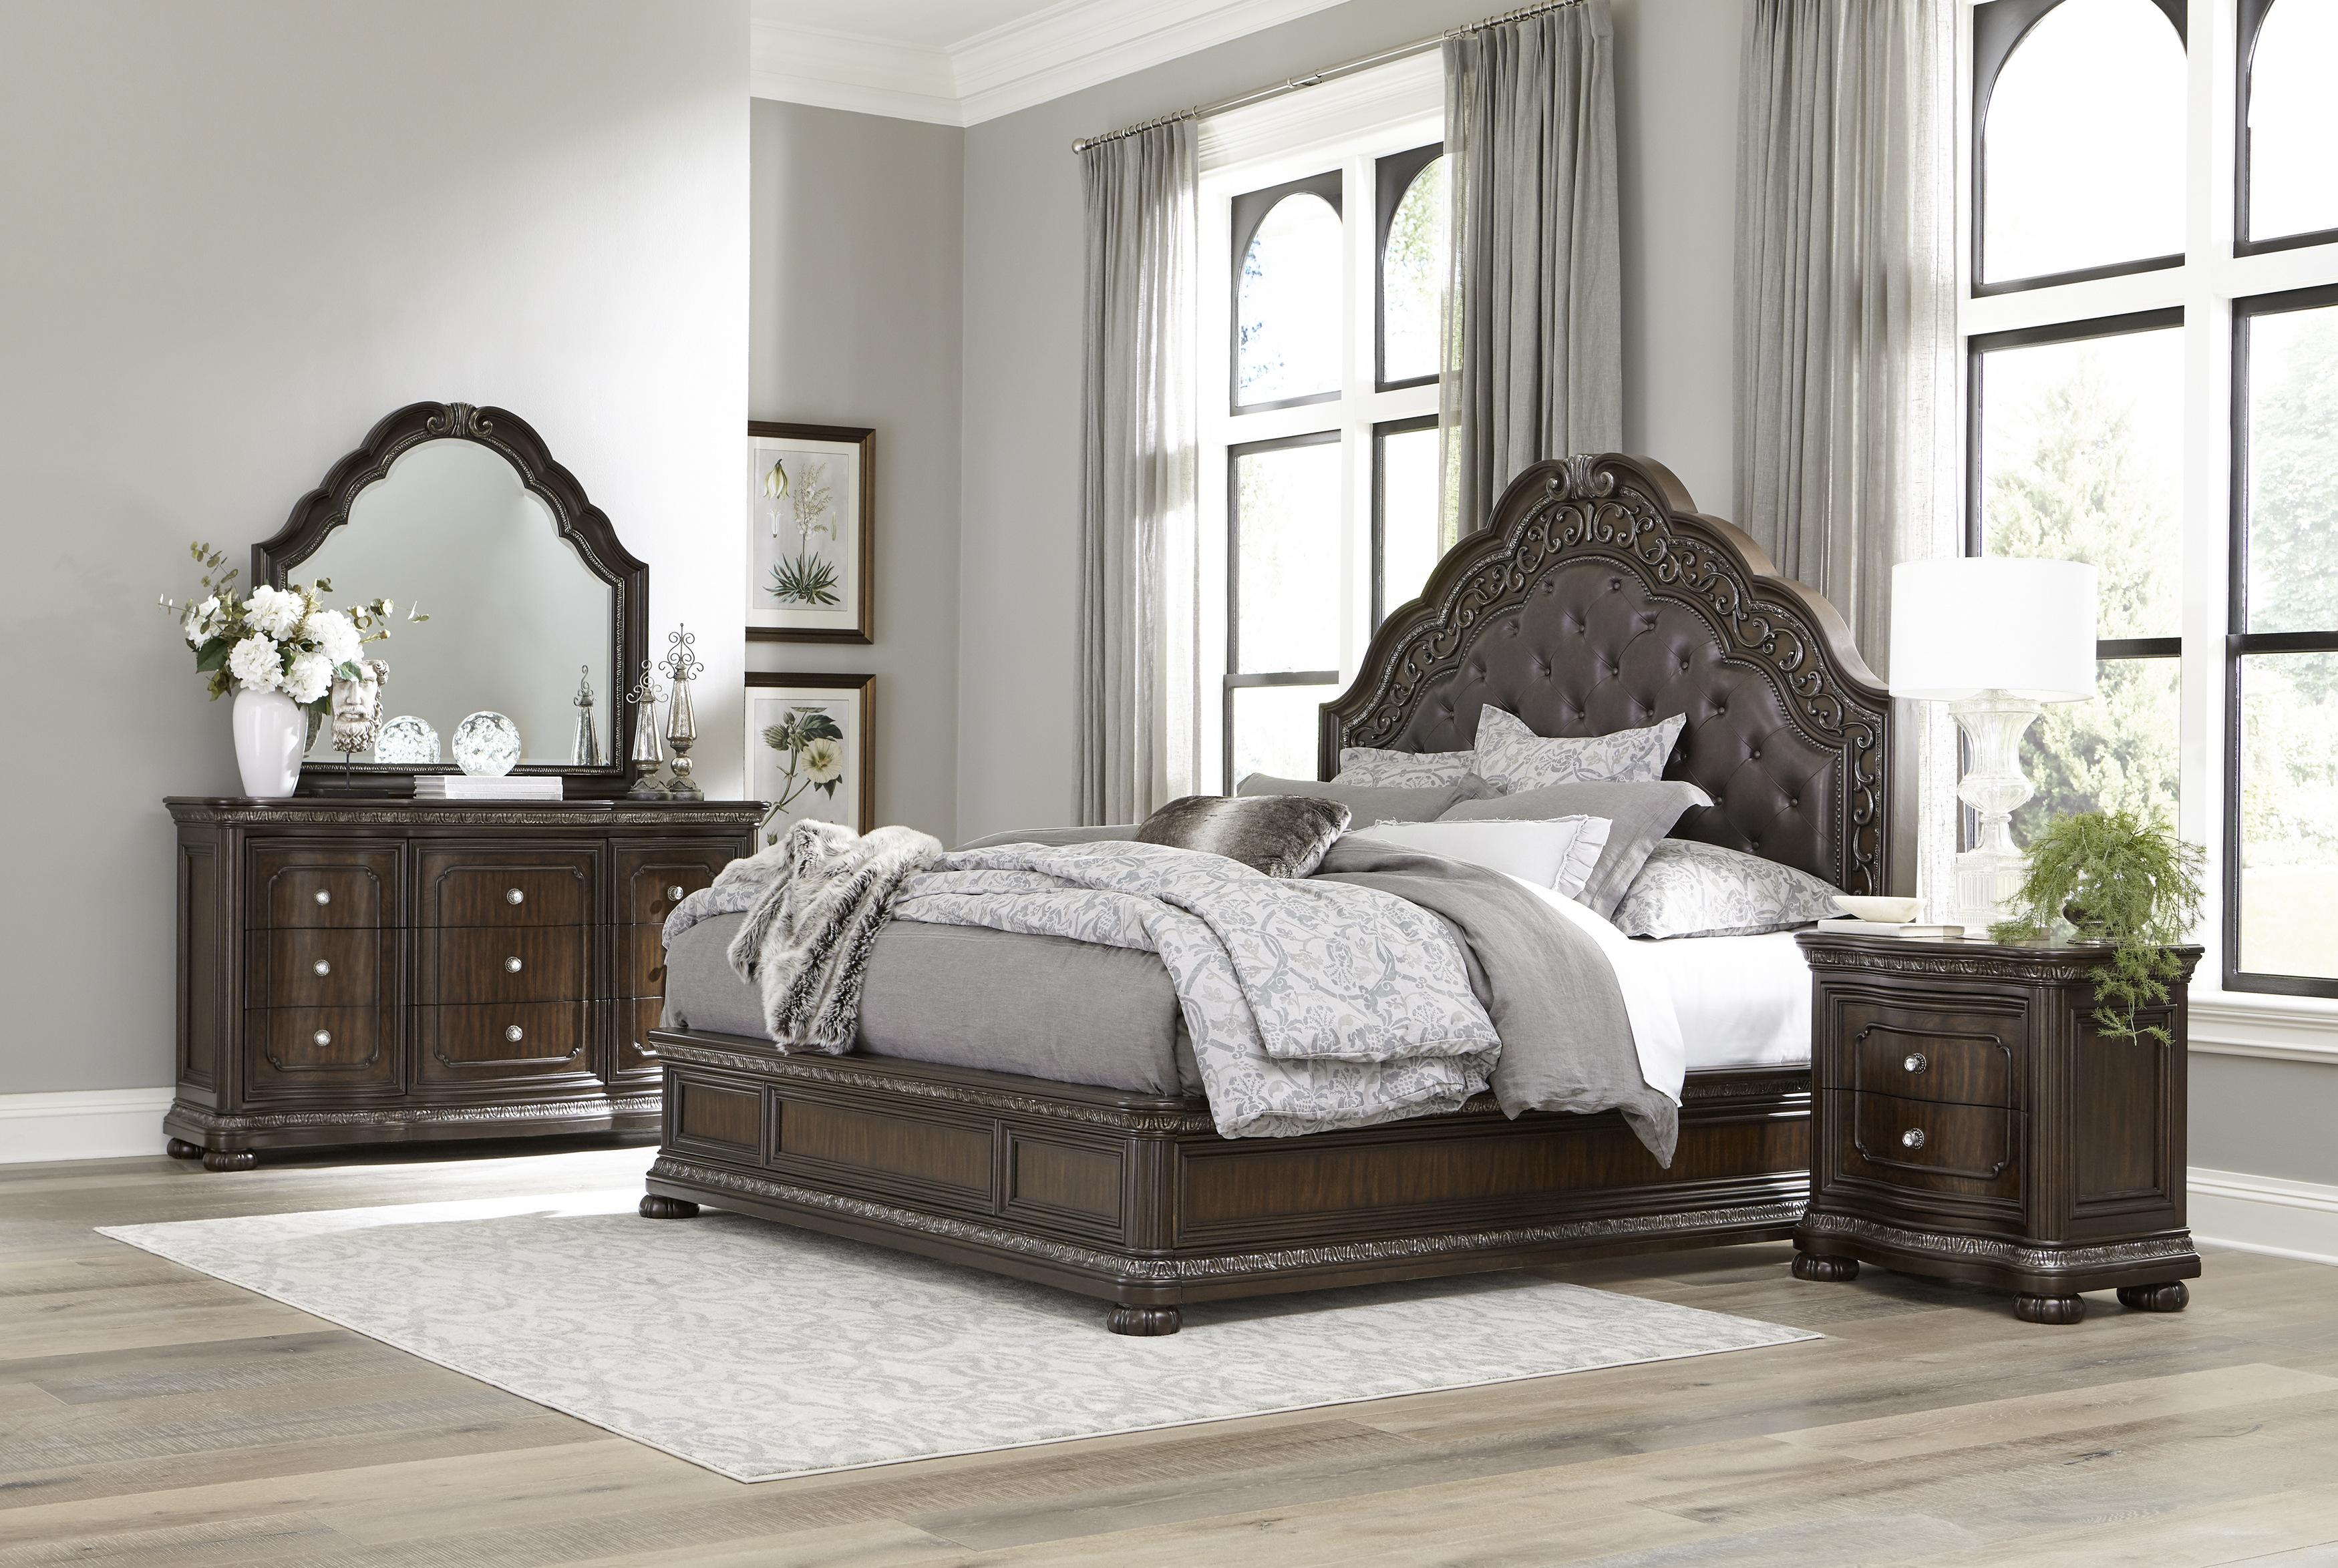 

    
Traditional Dark Cherry Wood Queen Bedroom Set 5pcs Homelegance 1407-1* Beddington
